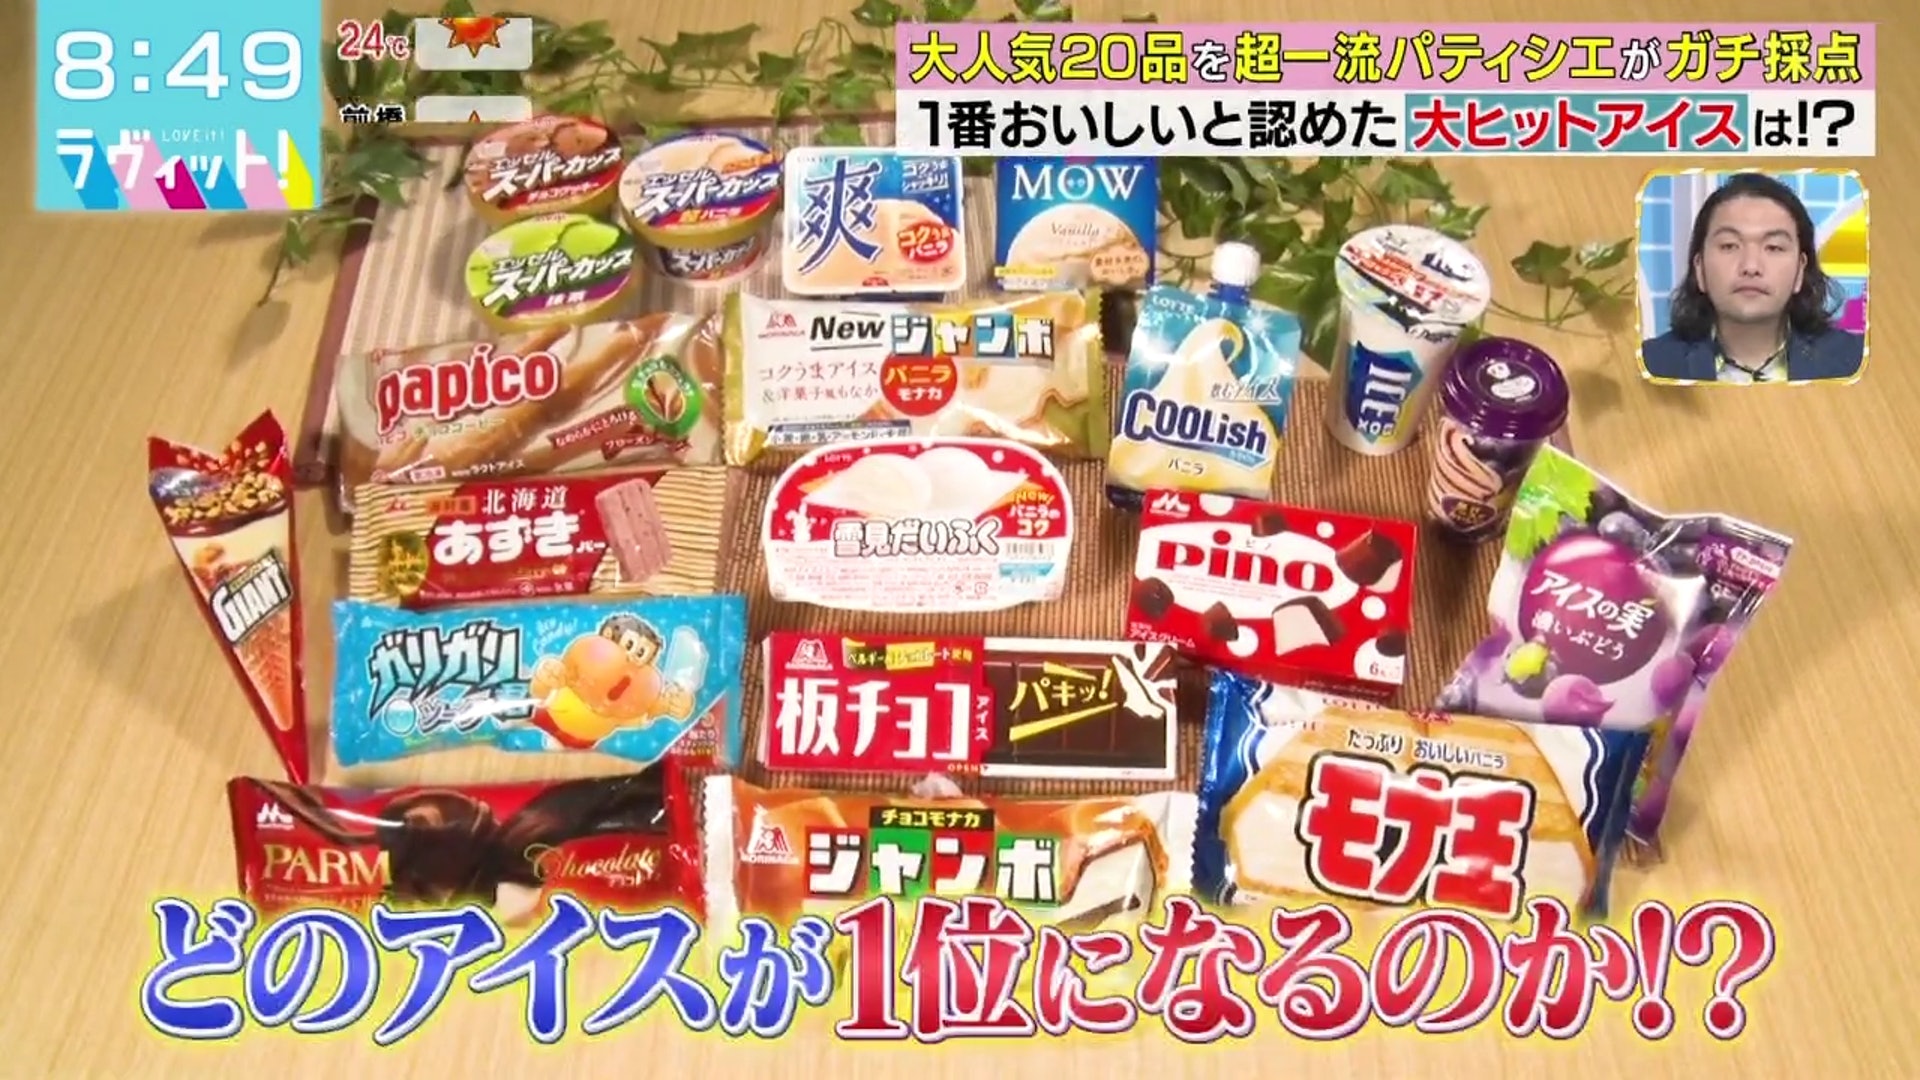 日本甜品師嚴選雪糕top 10 森永pino第9 有一款完勝明治雪糕杯